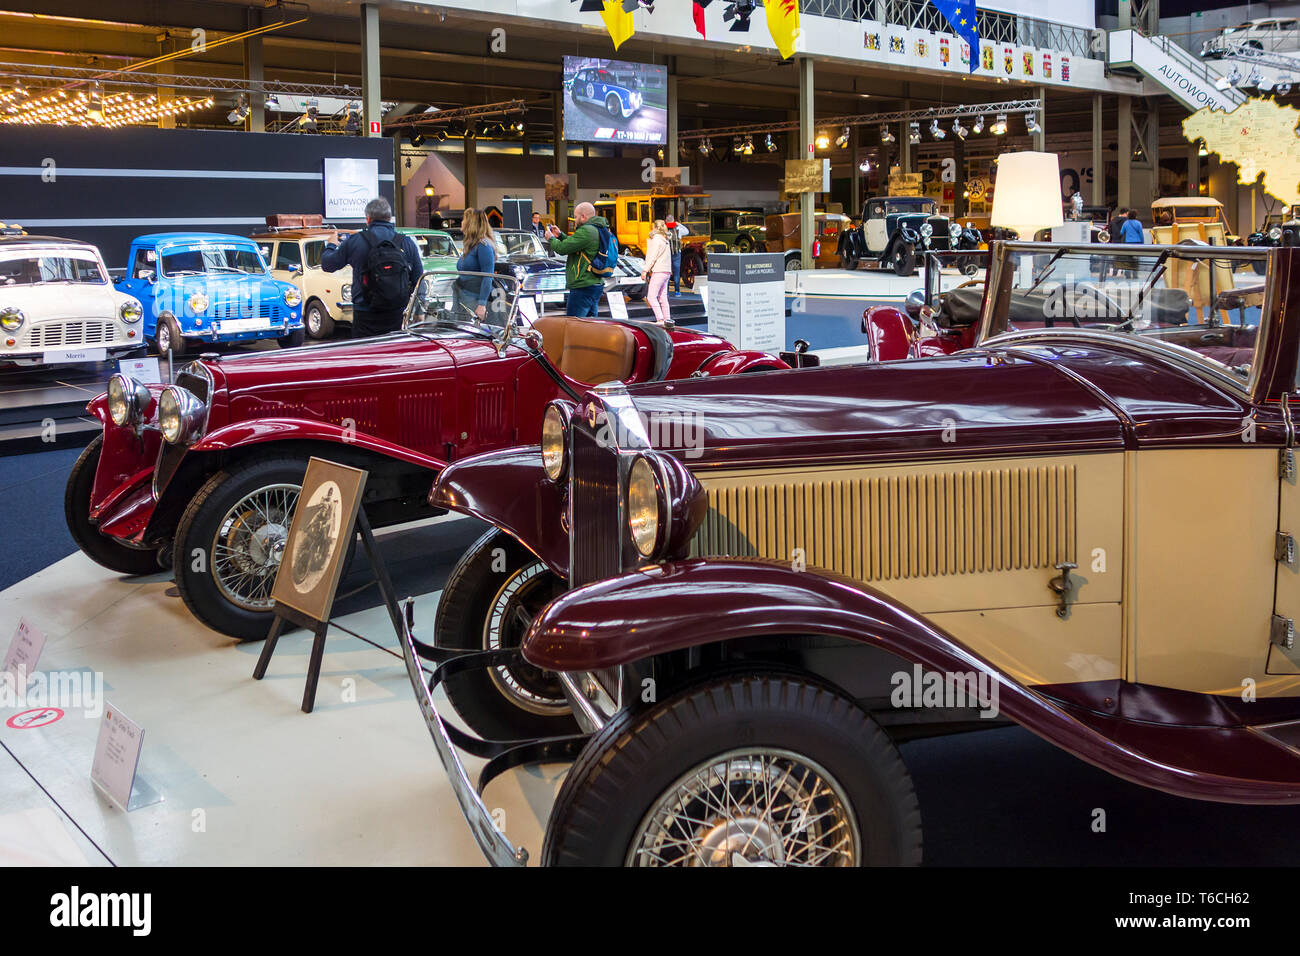 Les touristes à la recherche à l'ensemble de voitures classiques et oldtimers véhicules anciens, à l'Autoworld, vintage car museum à Bruxelles, Belgique Banque D'Images